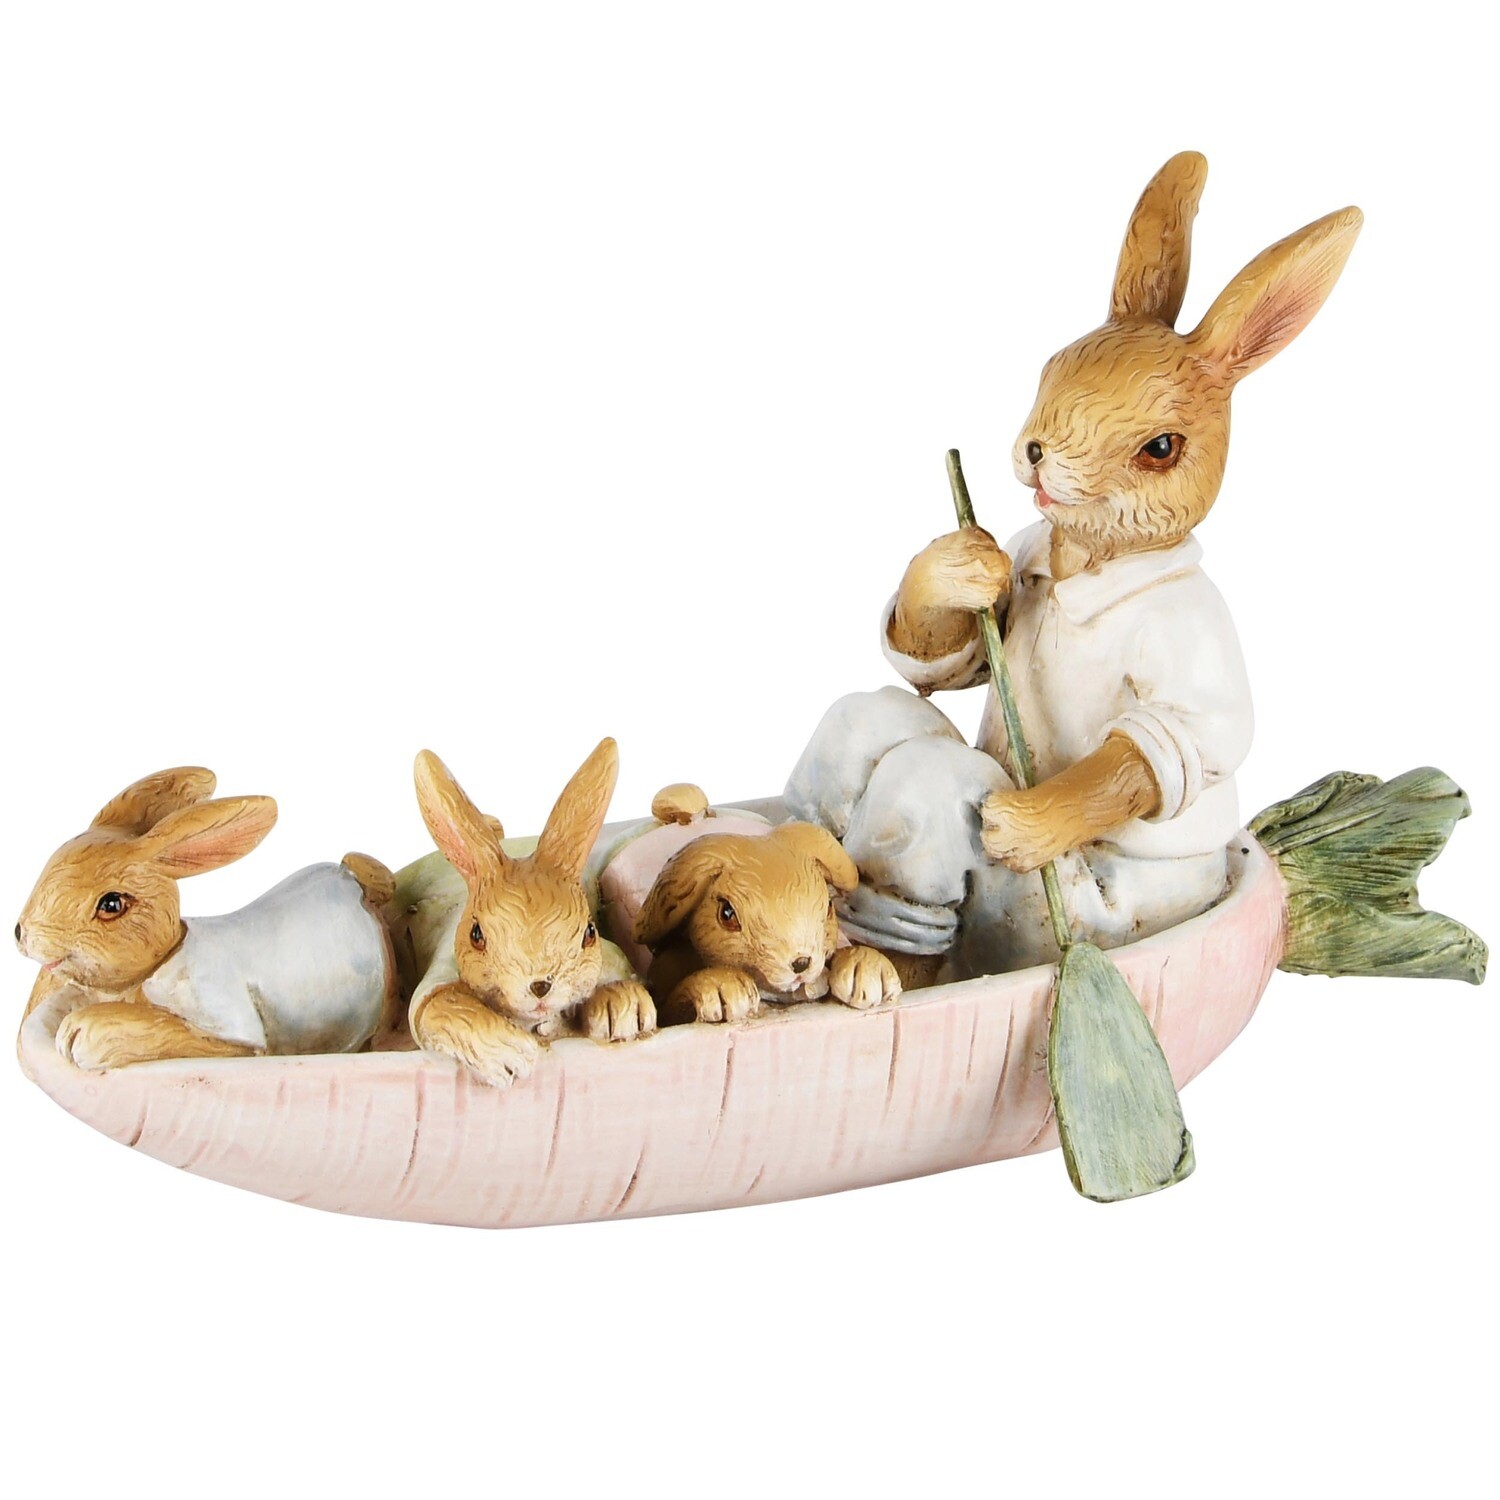 Papa bunny met kids in boot pastel